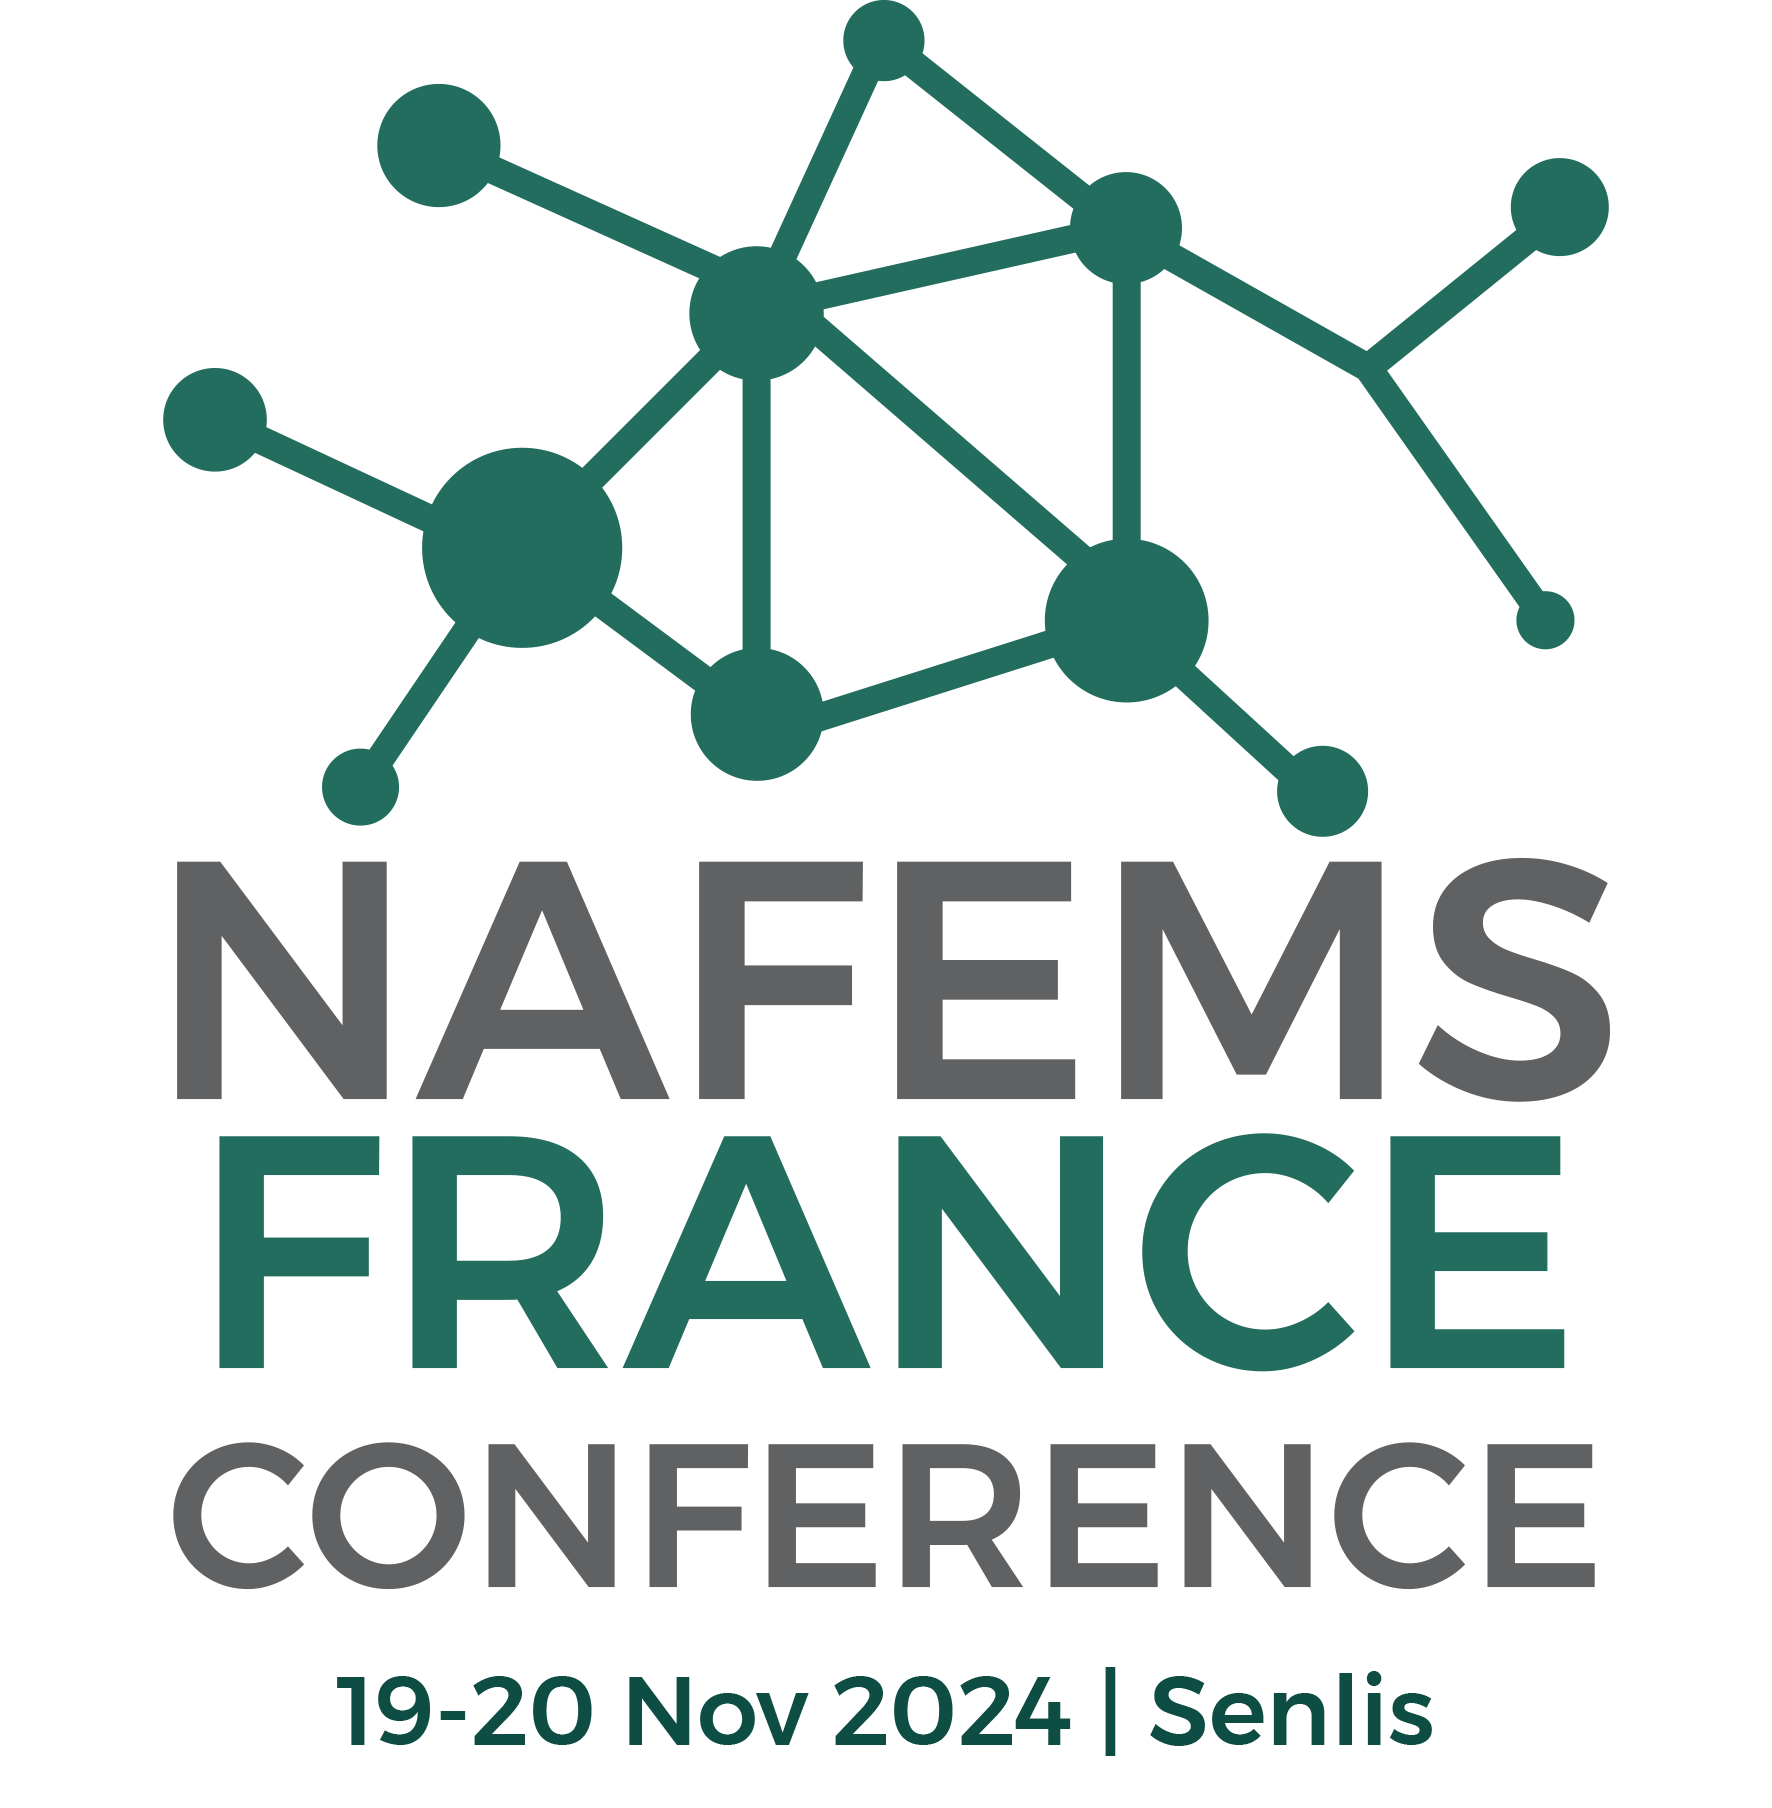 NAFEMS France Conference